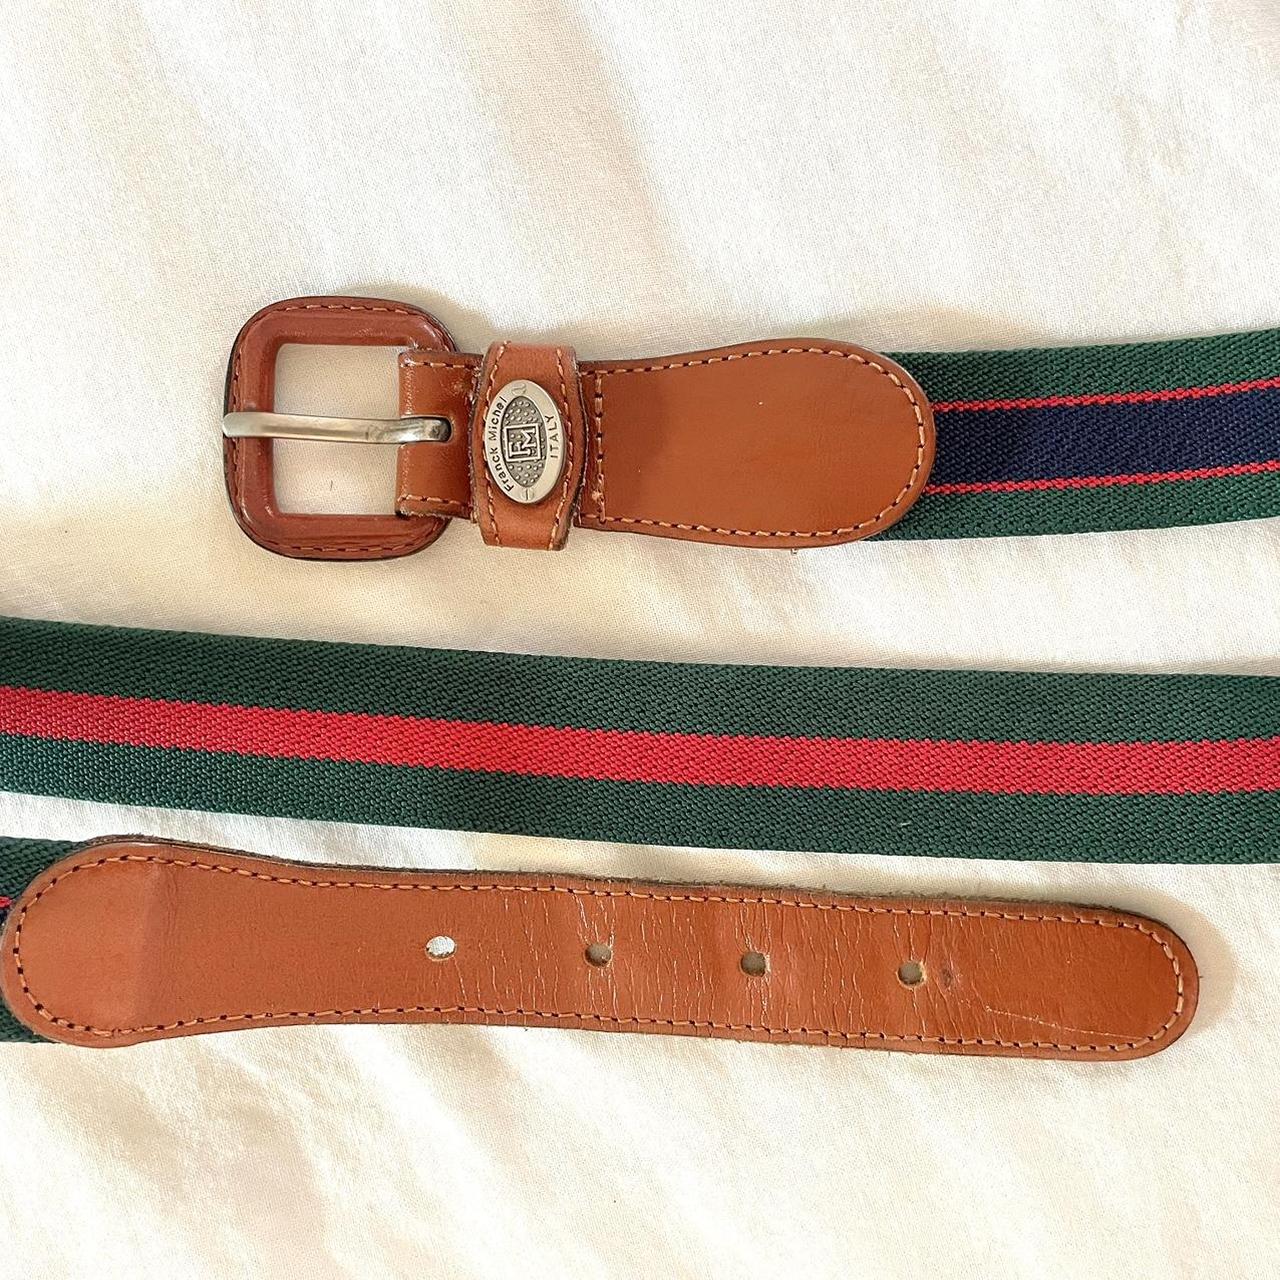 Vintage Franck Michel Italy striped belt, leather... - Depop